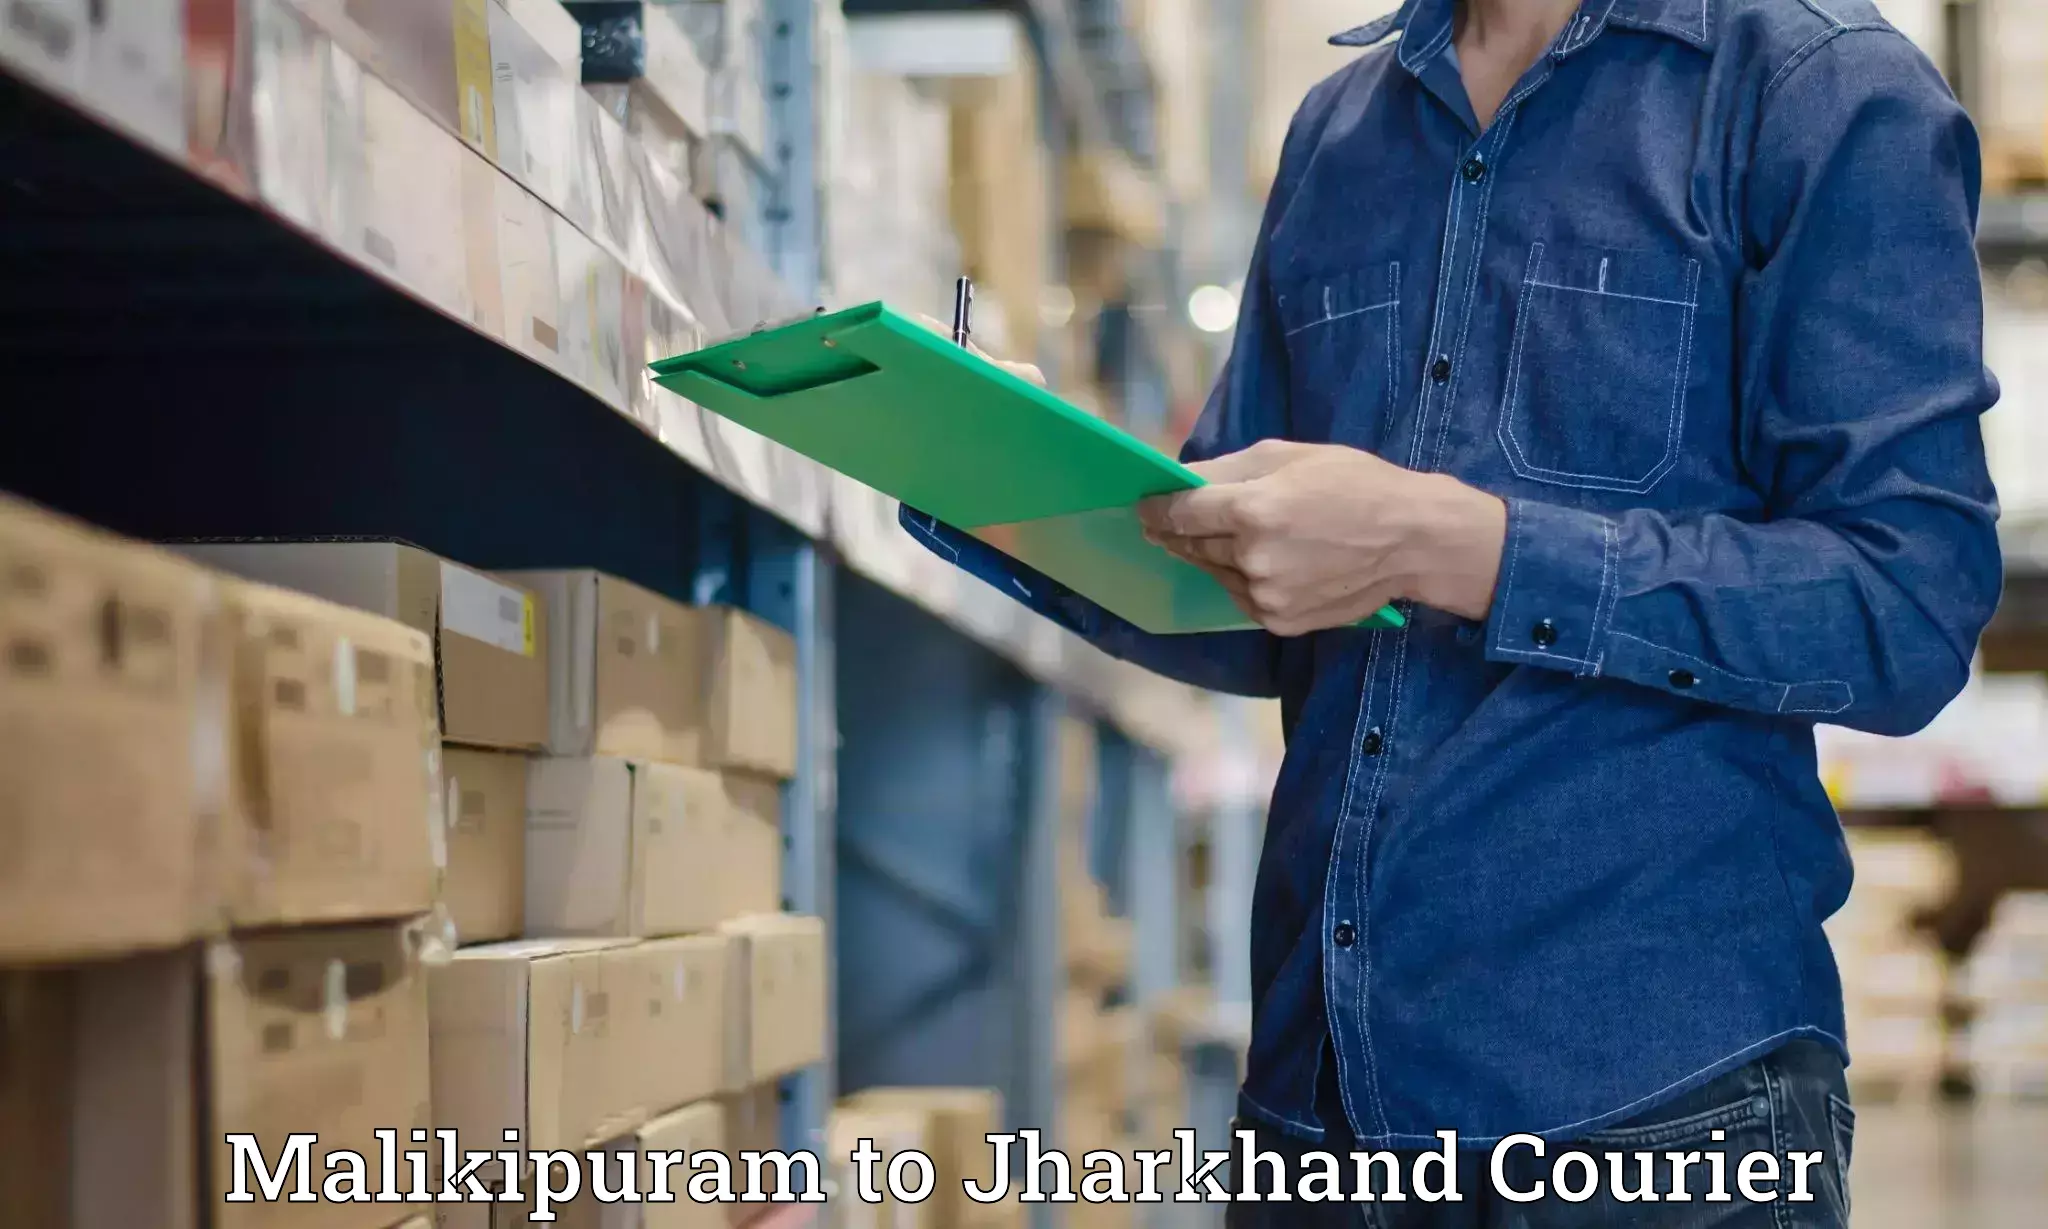 Express logistics service Malikipuram to Jharkhand